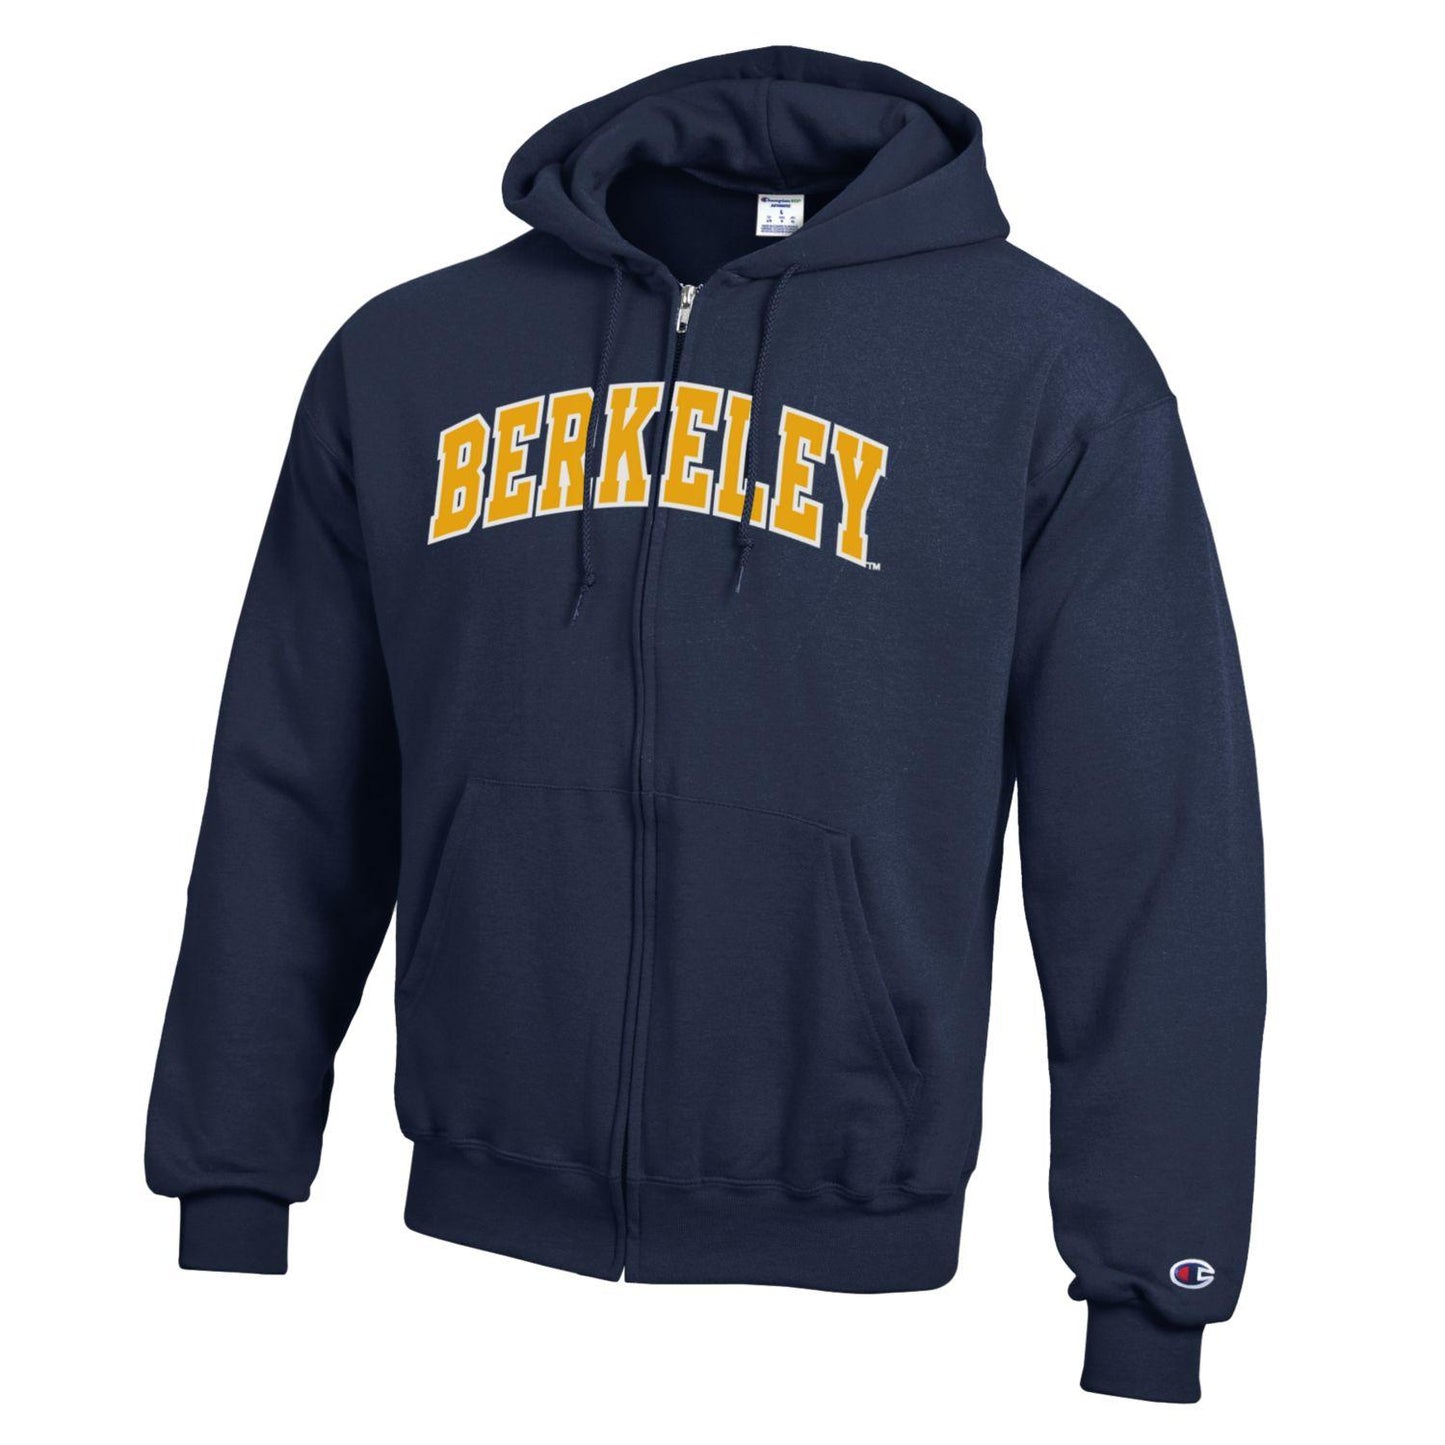 U.C. Berkeley arch double layer applique Champion zip-up hoodie sweatshirt-Navy-Shop College Wear